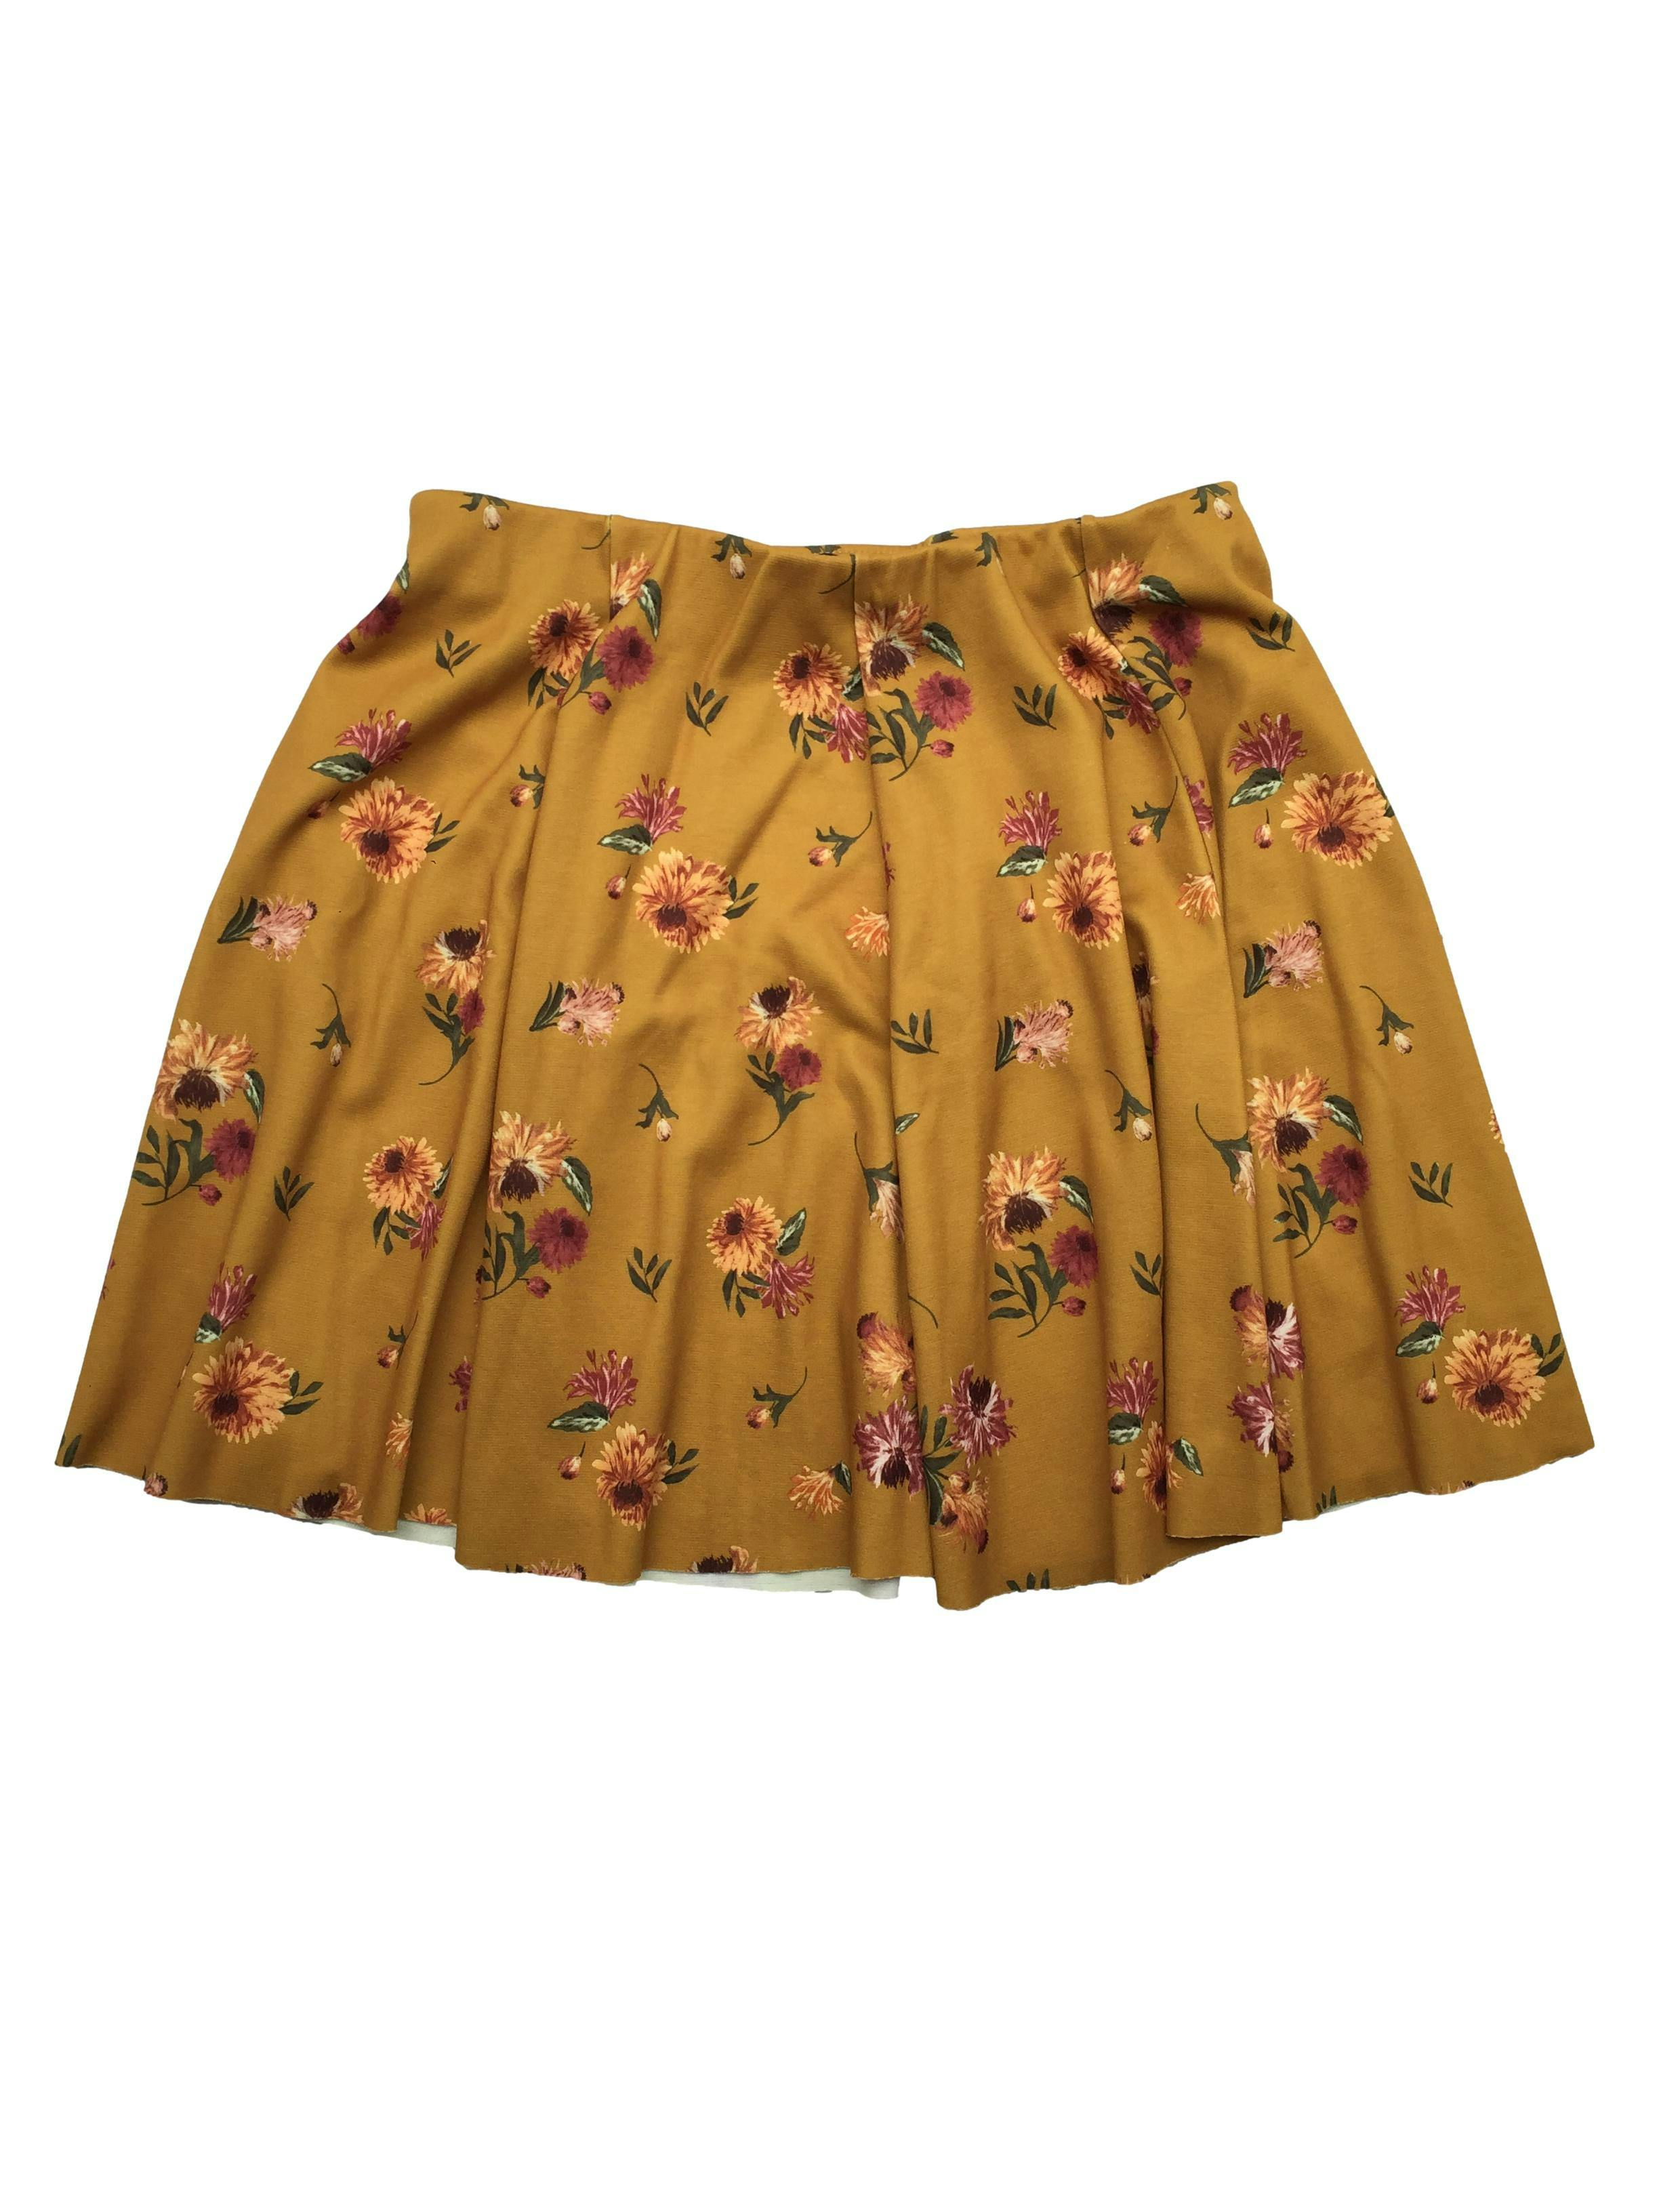 Falda Zara semicircular color mostaza con estampado floral, pretina elástica. Nuevo con etiqueta, precio original S/69. Cintura 72cm, Largo 42cm.